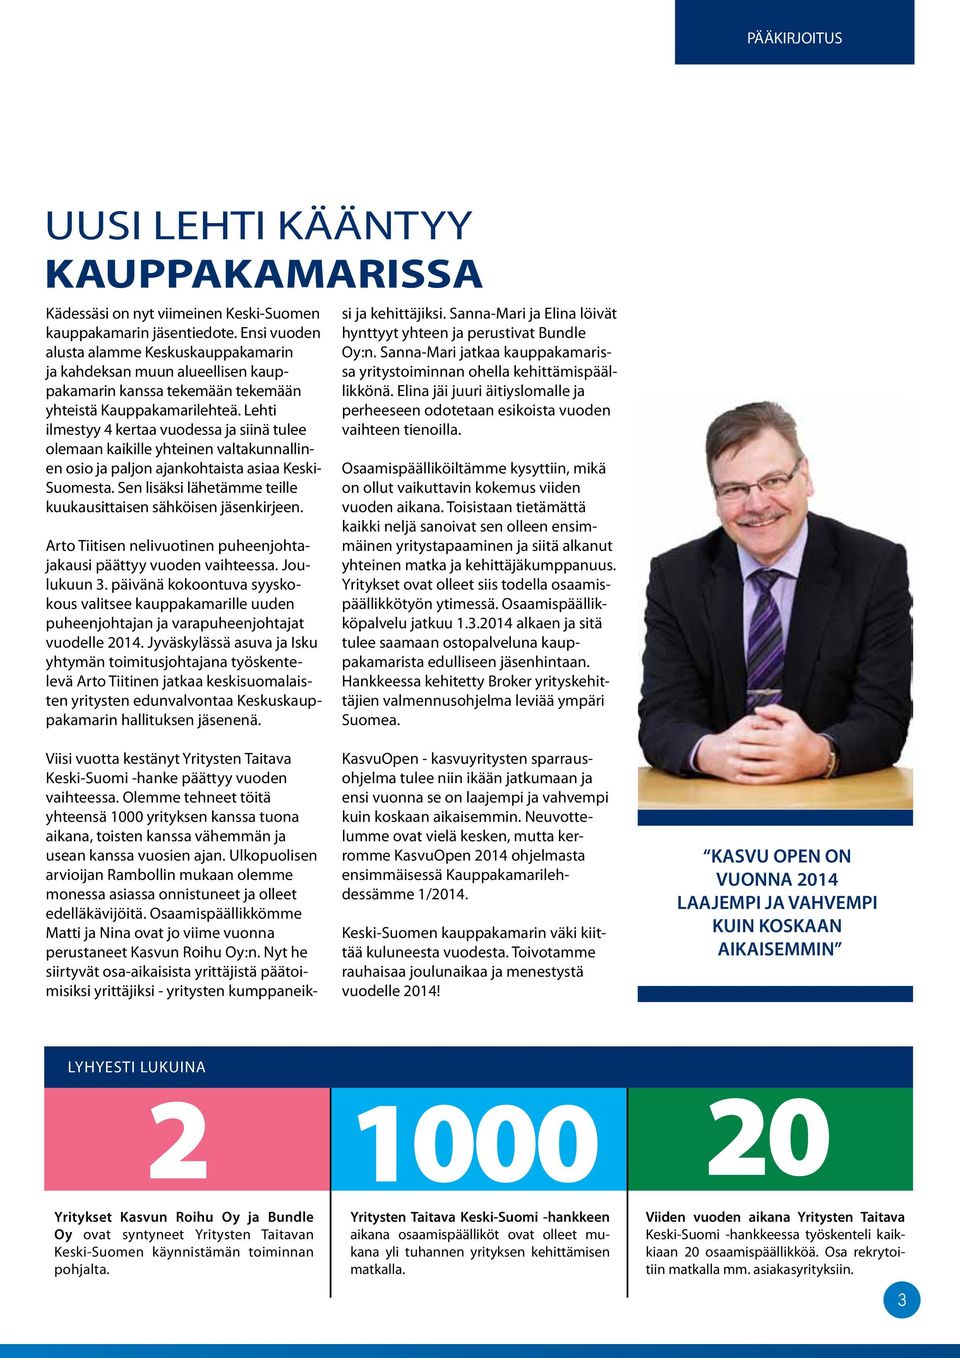 Lehti ilmestyy 4 kertaa vuodessa ja siinä tulee olemaan kaikille yhteinen valtakunnallinen osio ja paljon ajankohtaista asiaa Keski- Suomesta.